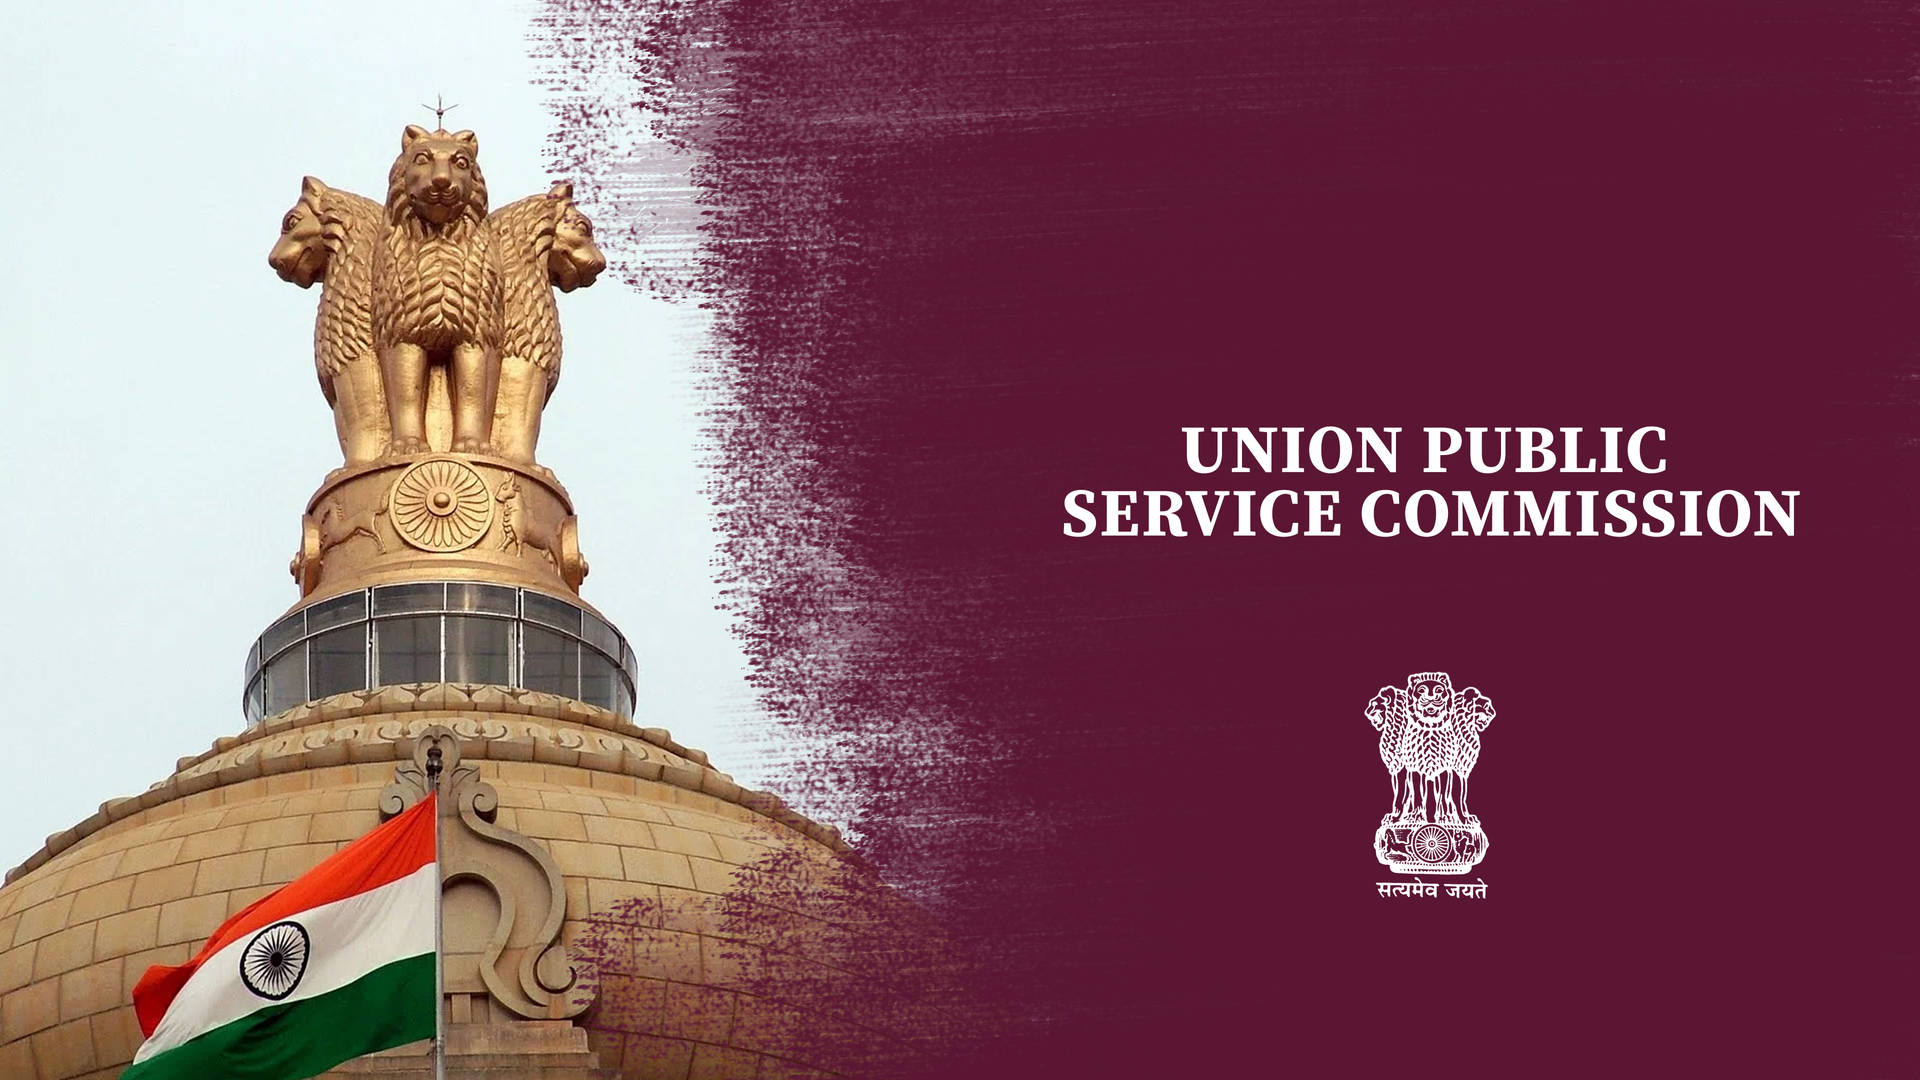 Union Public Service Commission (upsc) Statue Background